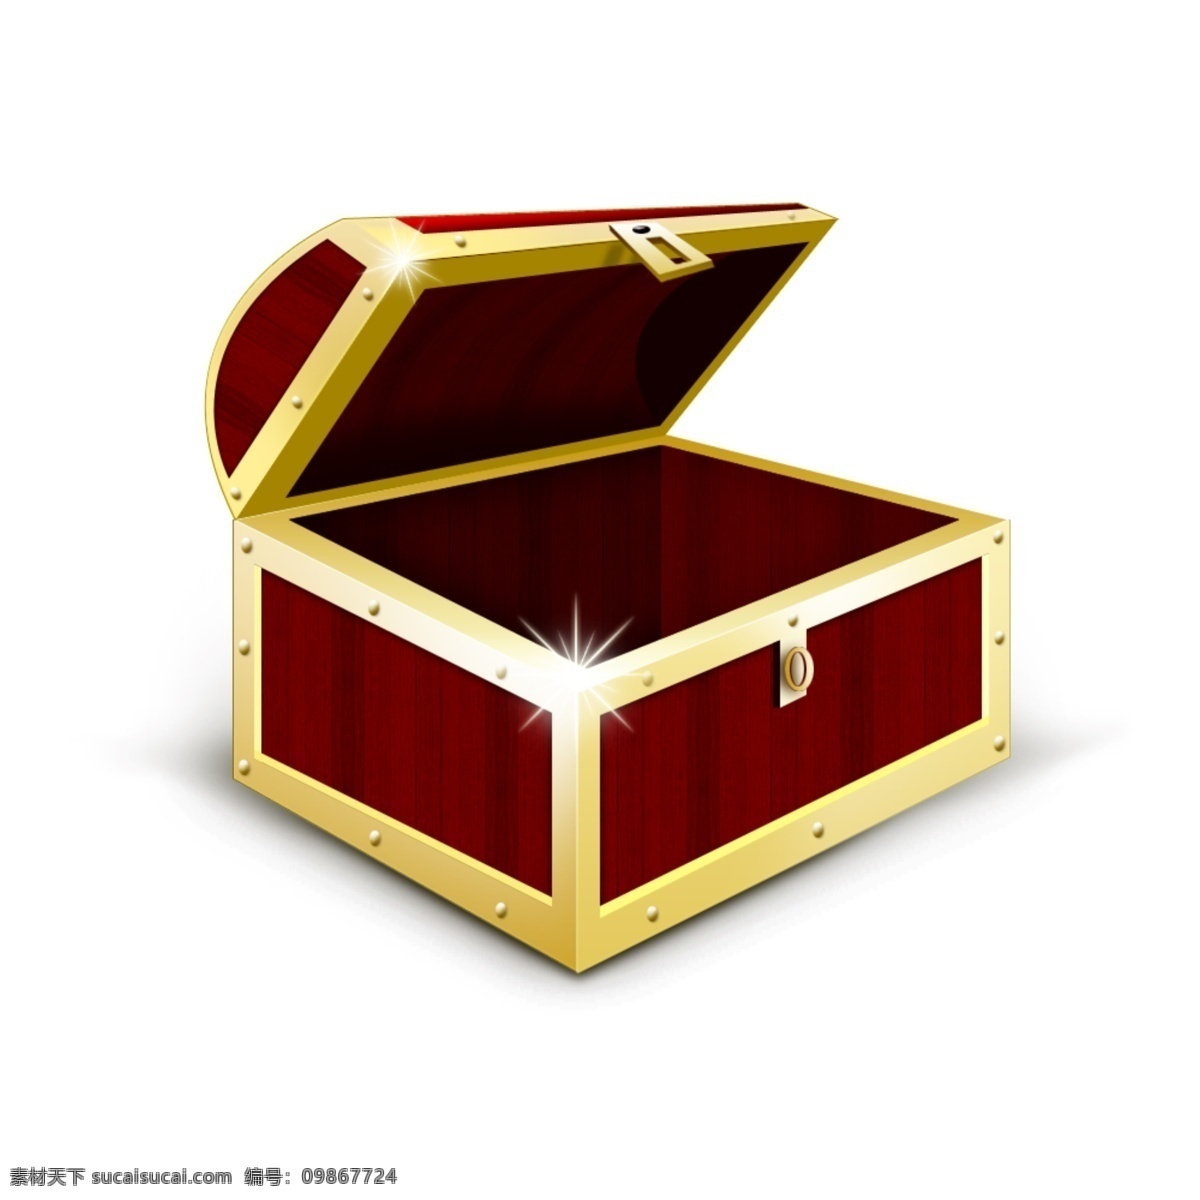 手绘 红色 金属 宝 箱 手绘箱子 手绘宝箱 宝箱 箱子 金属宝箱 红色宝箱